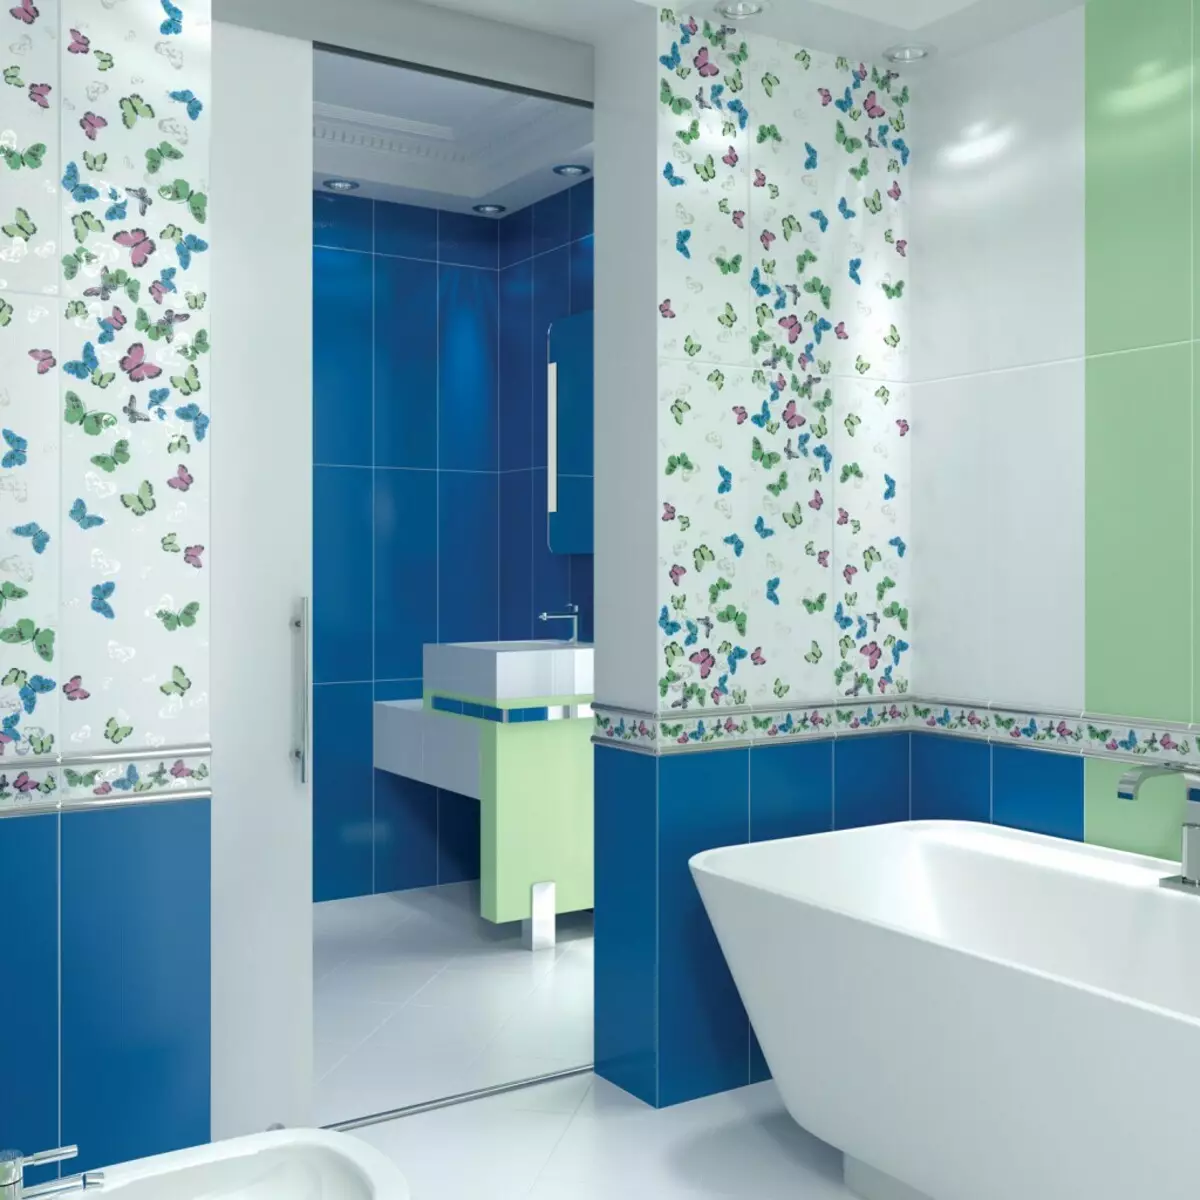 Decoración de azulejos en el baño.